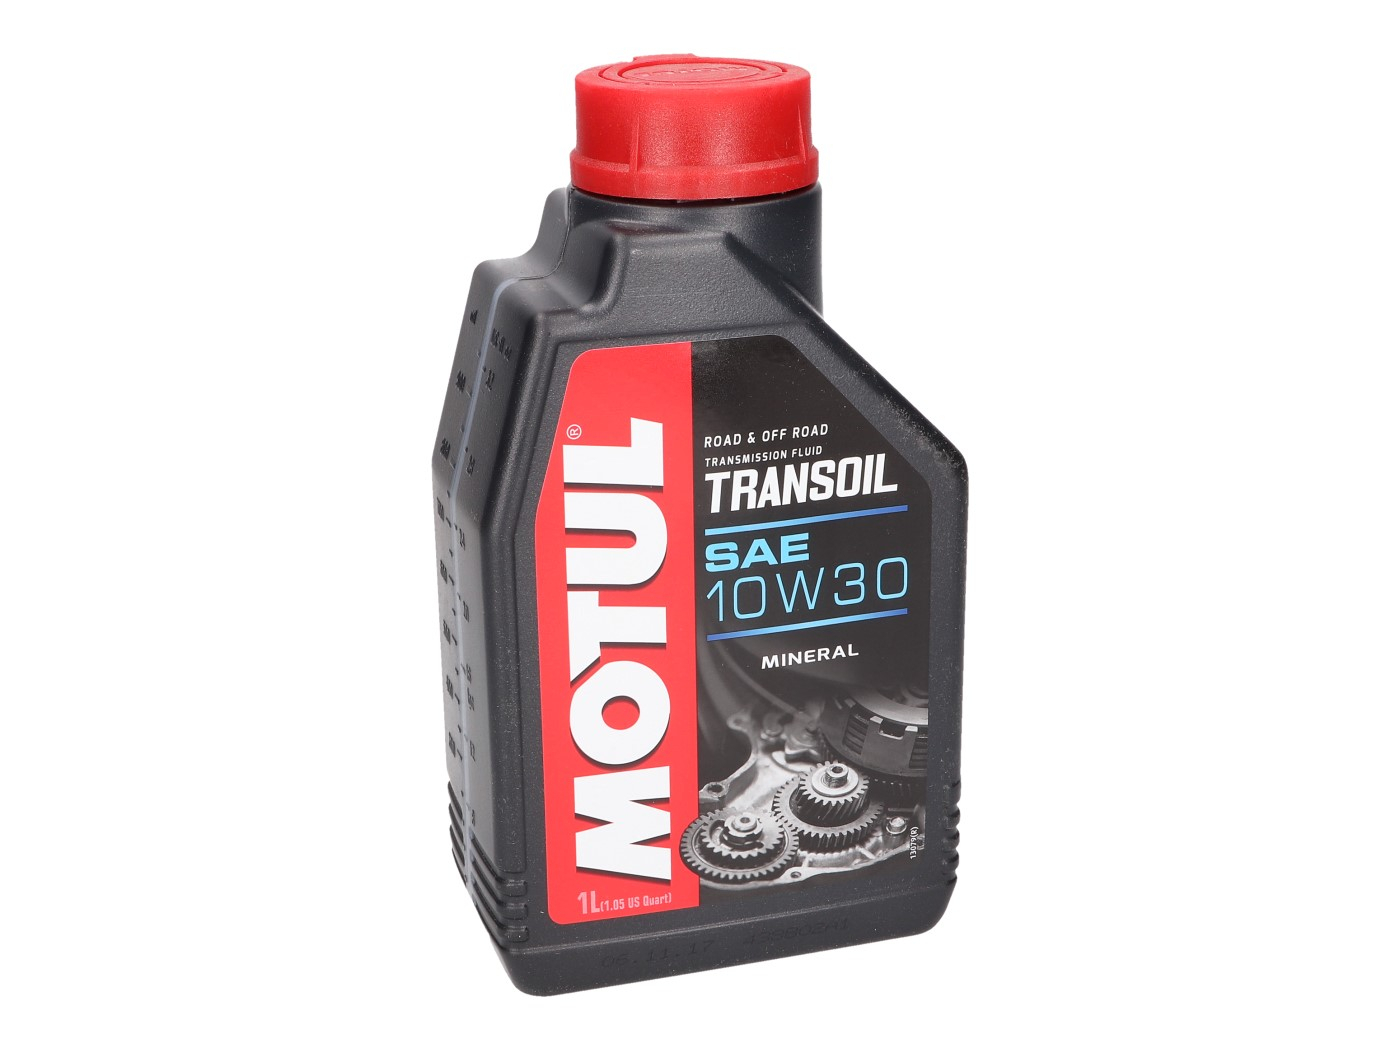 Motul Transoil 10W30 2-stroke Gearbox Oil 1 Liter